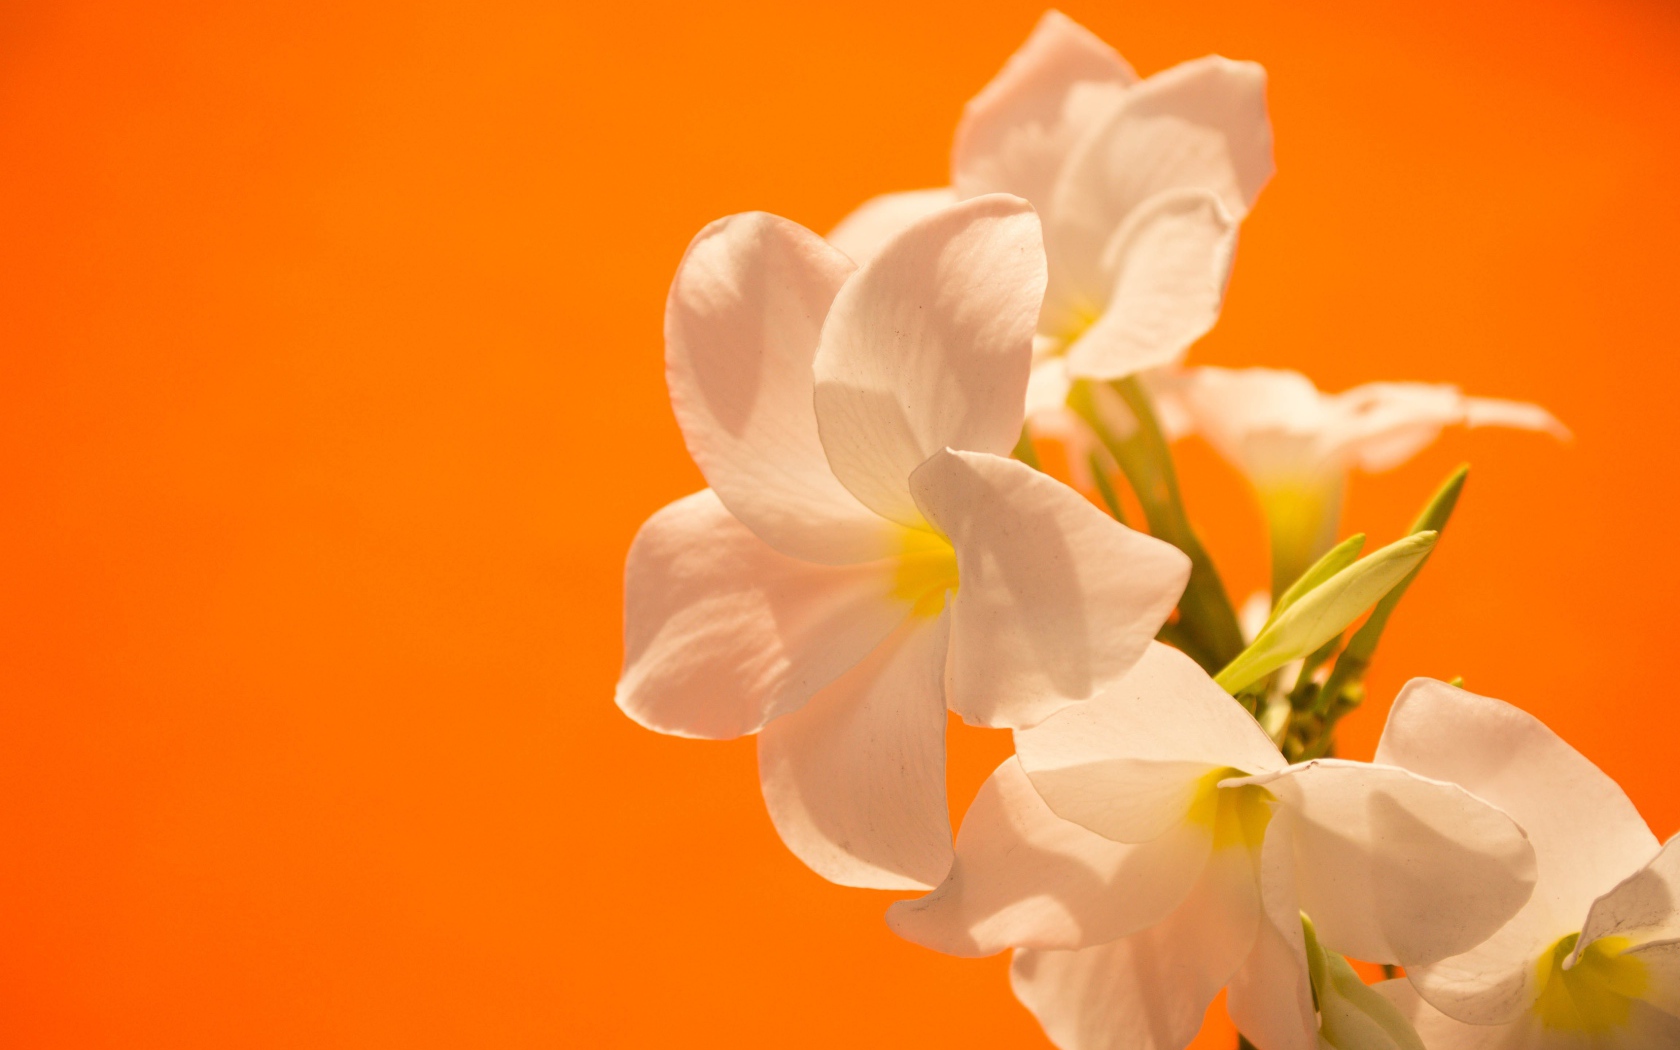 Нежные белые цветы на оранжевом фоне